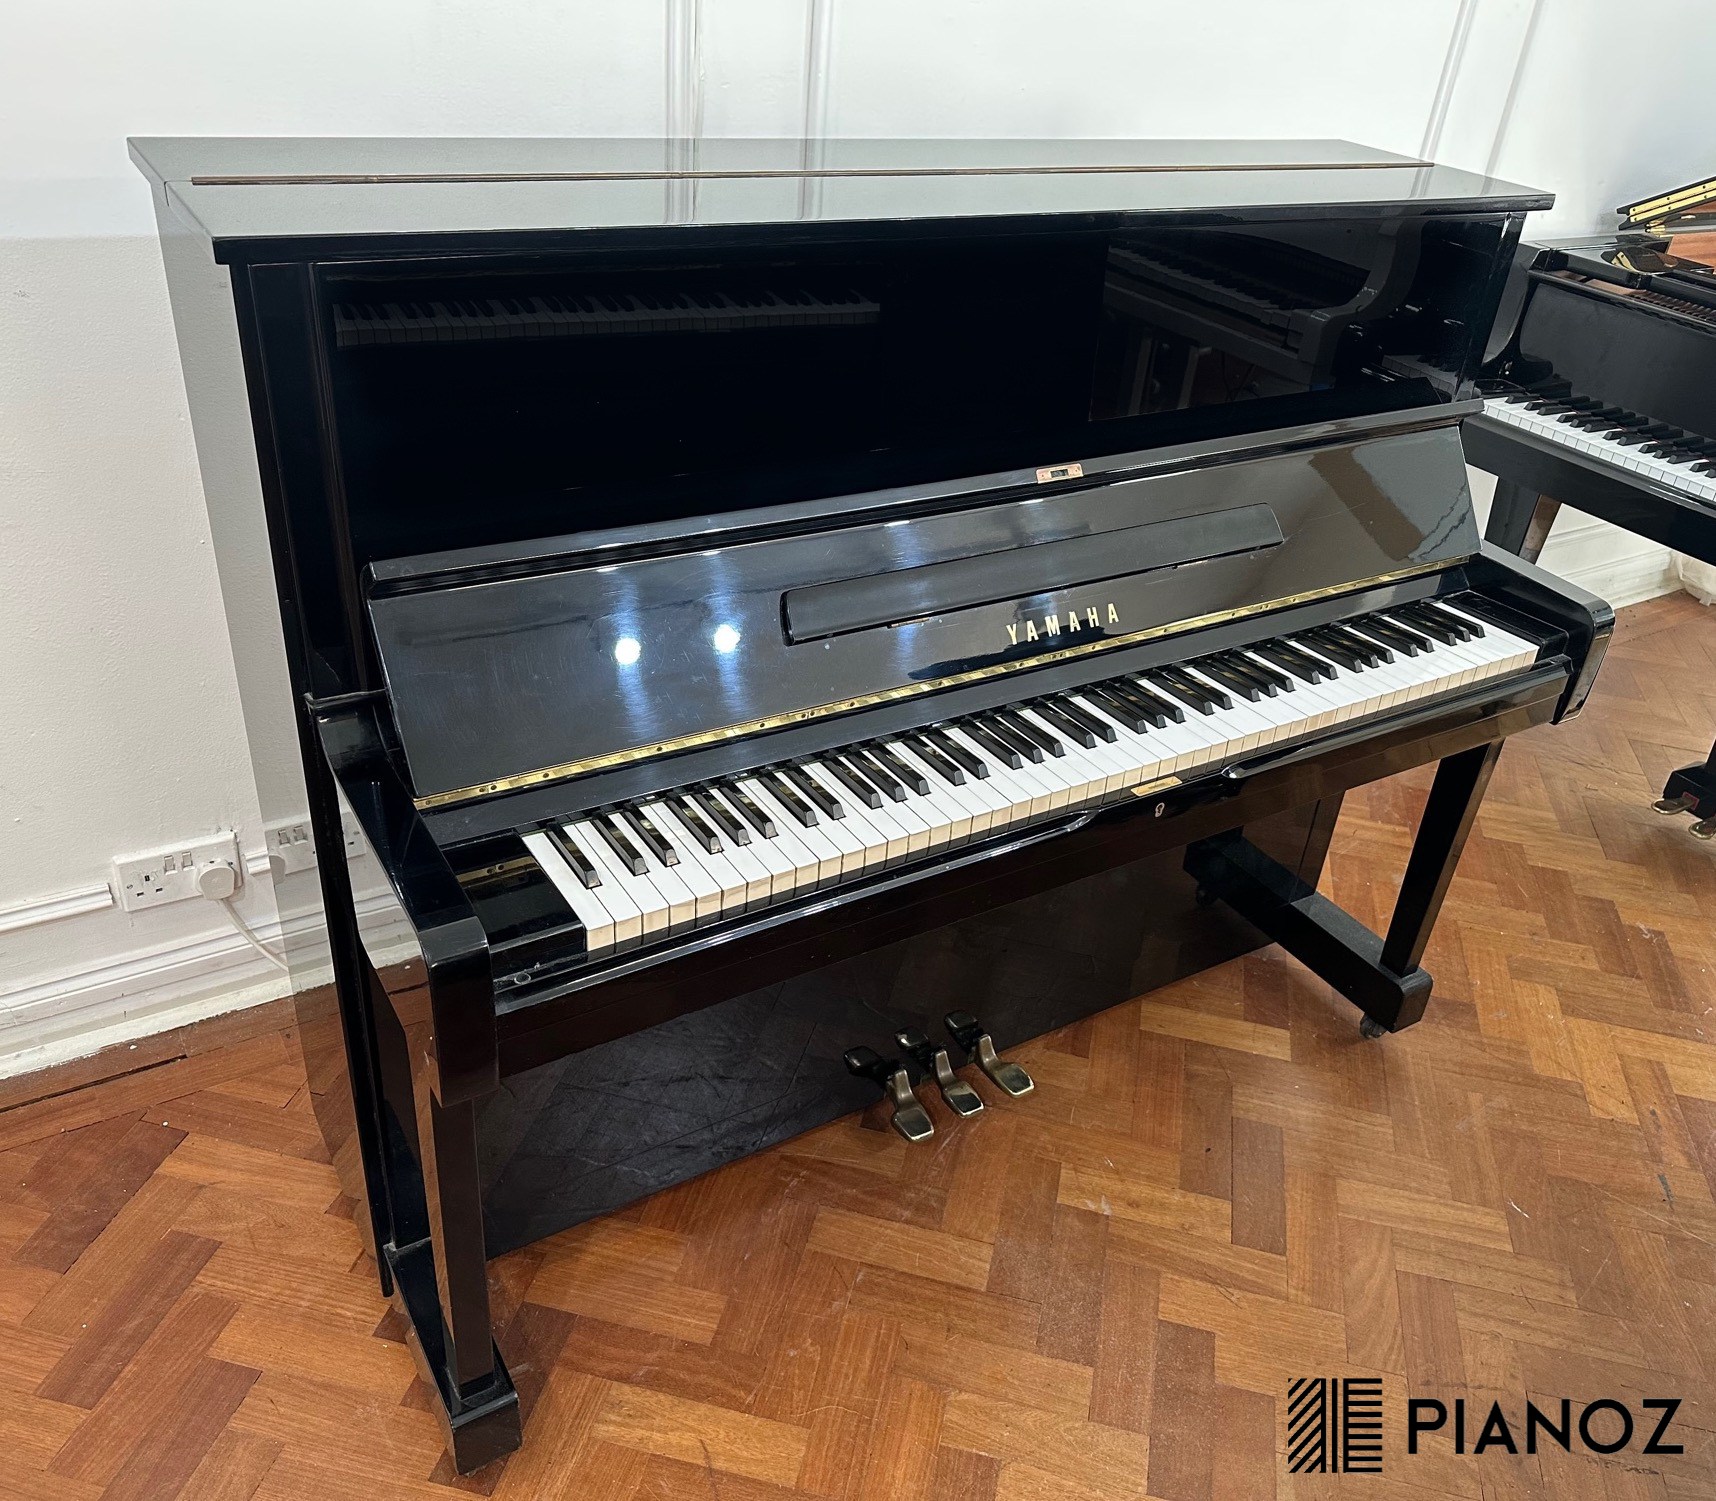 Yamaha U1 Refurbished Upright Piano piano for sale in UK